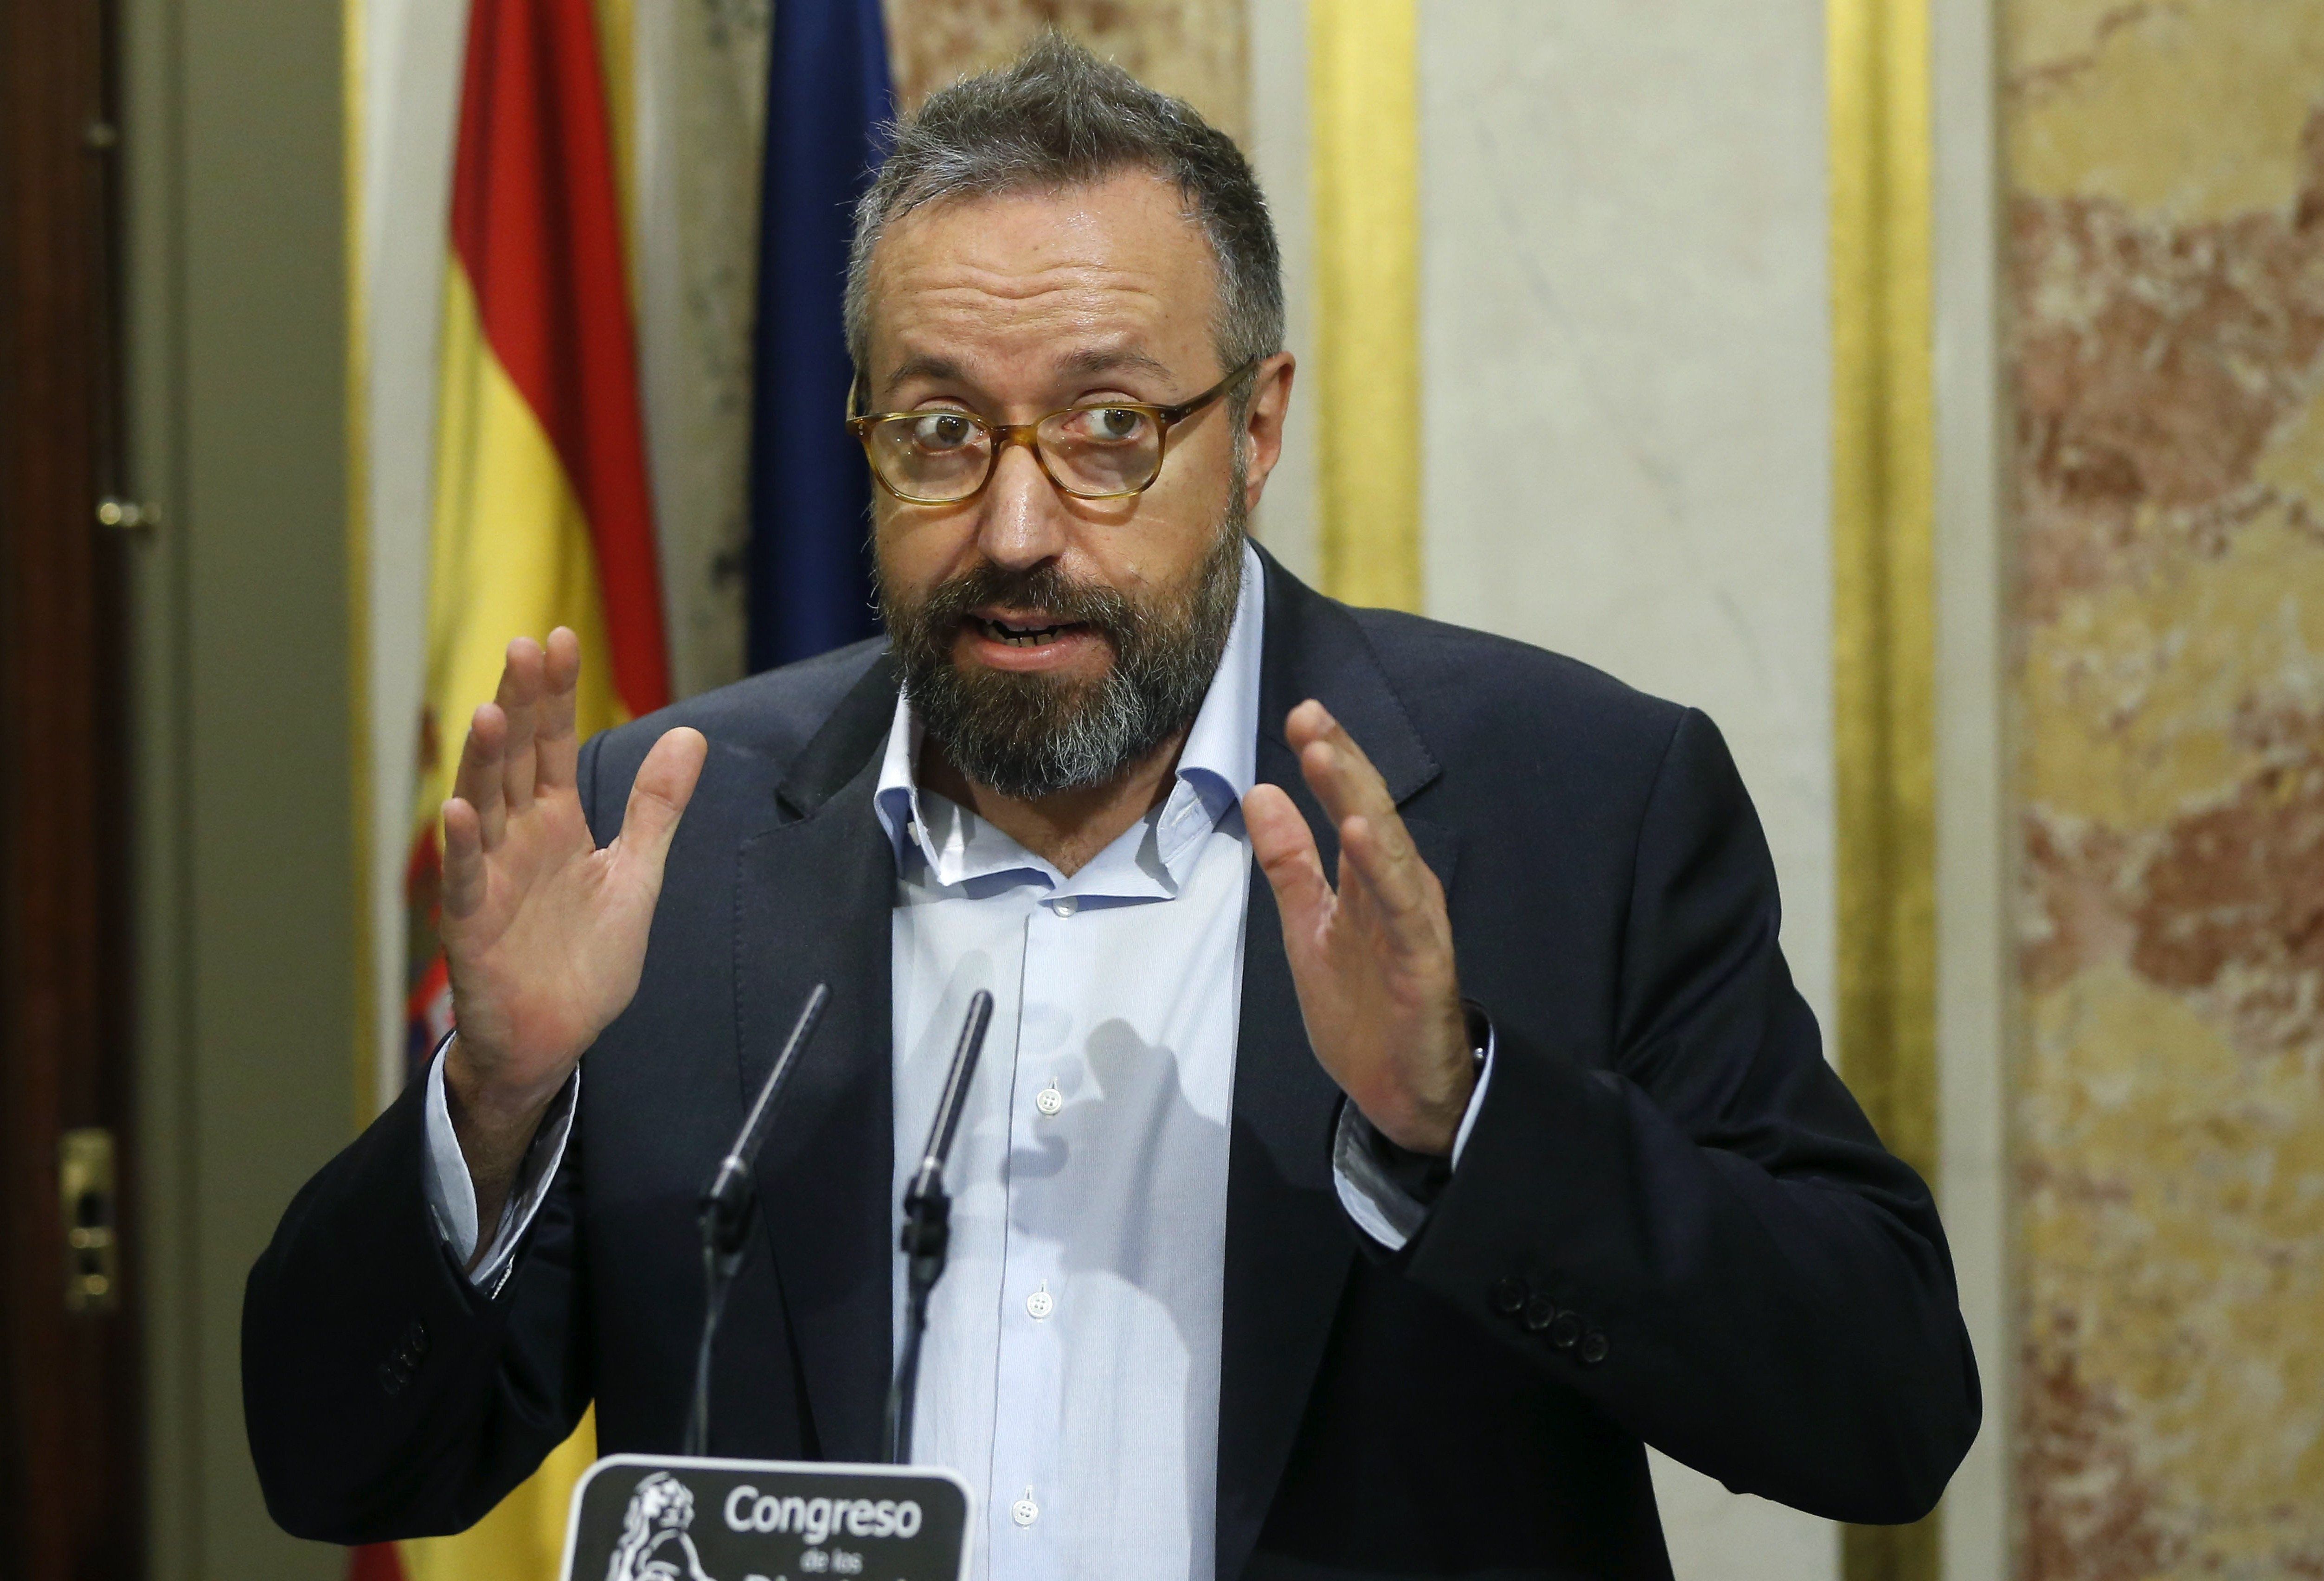 Paradójica crítica de C's al discurso de Rajoy